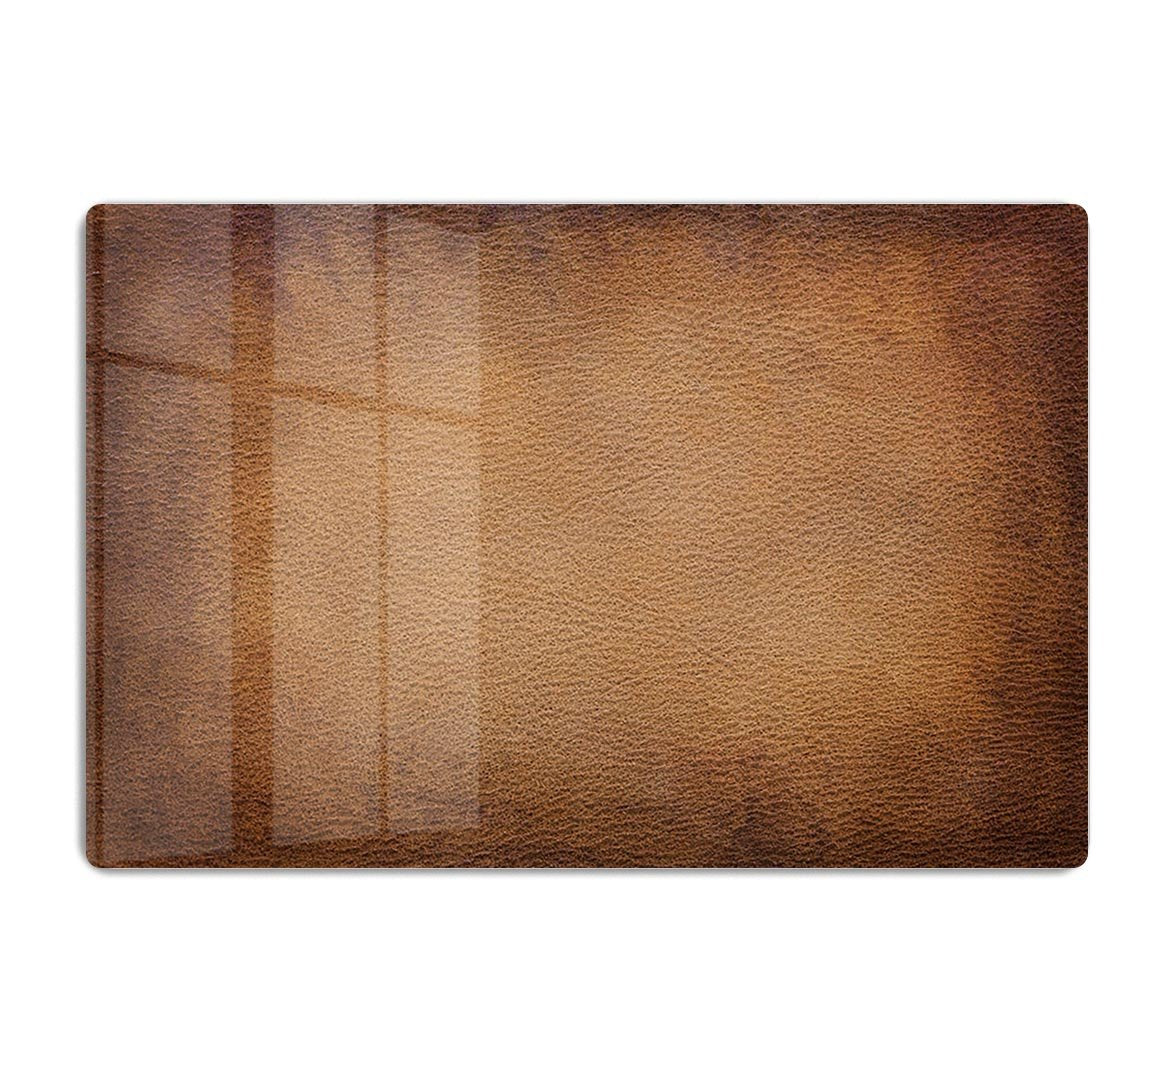 Old vintage brown leather HD Metal Print - Canvas Art Rocks - 1